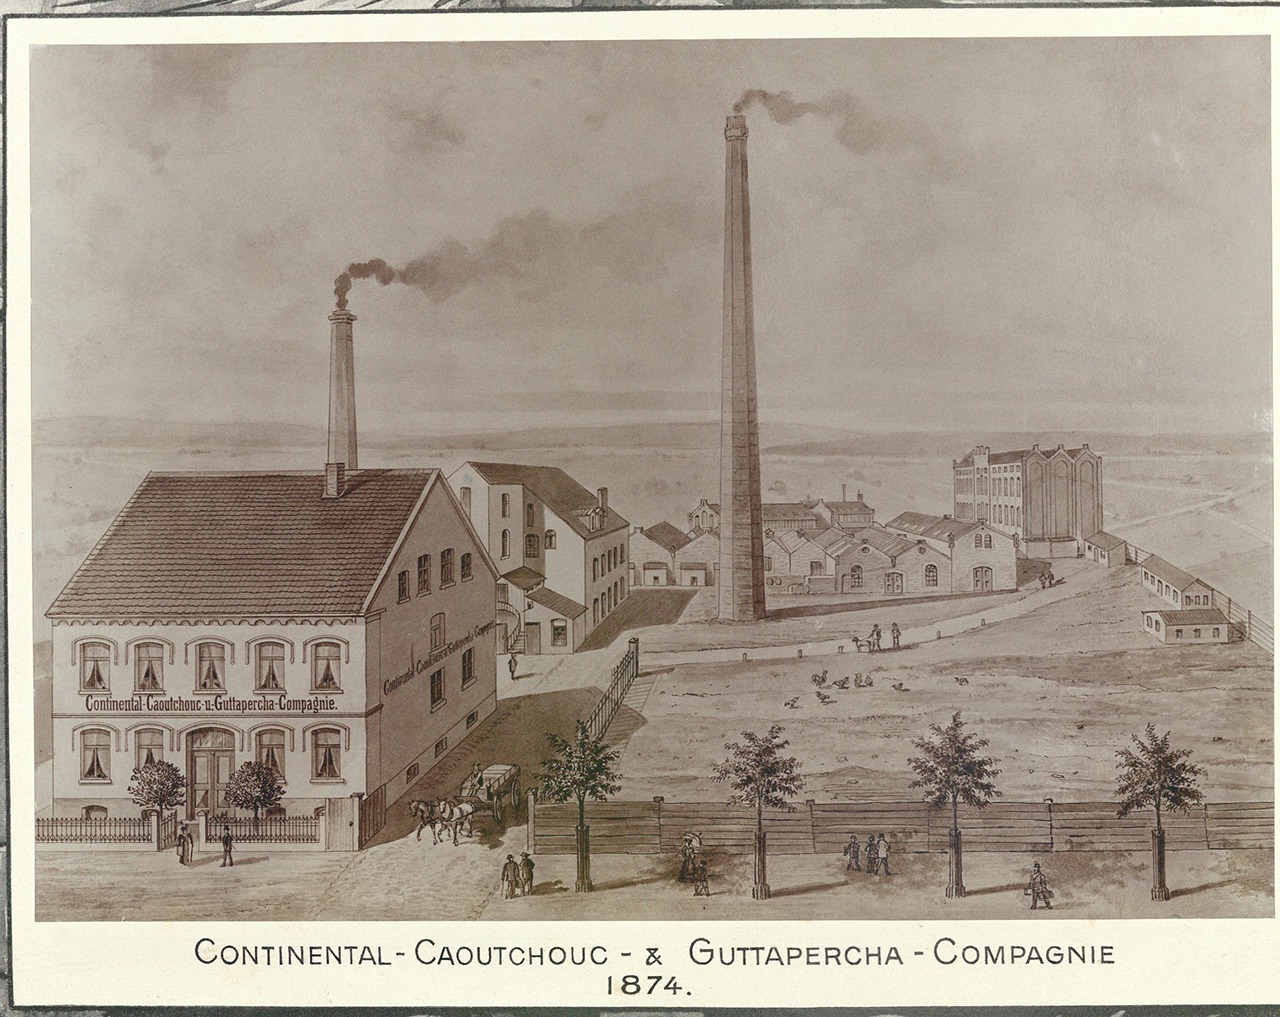 Continental Caoutchouc & Gutta-Percha Company Hannover